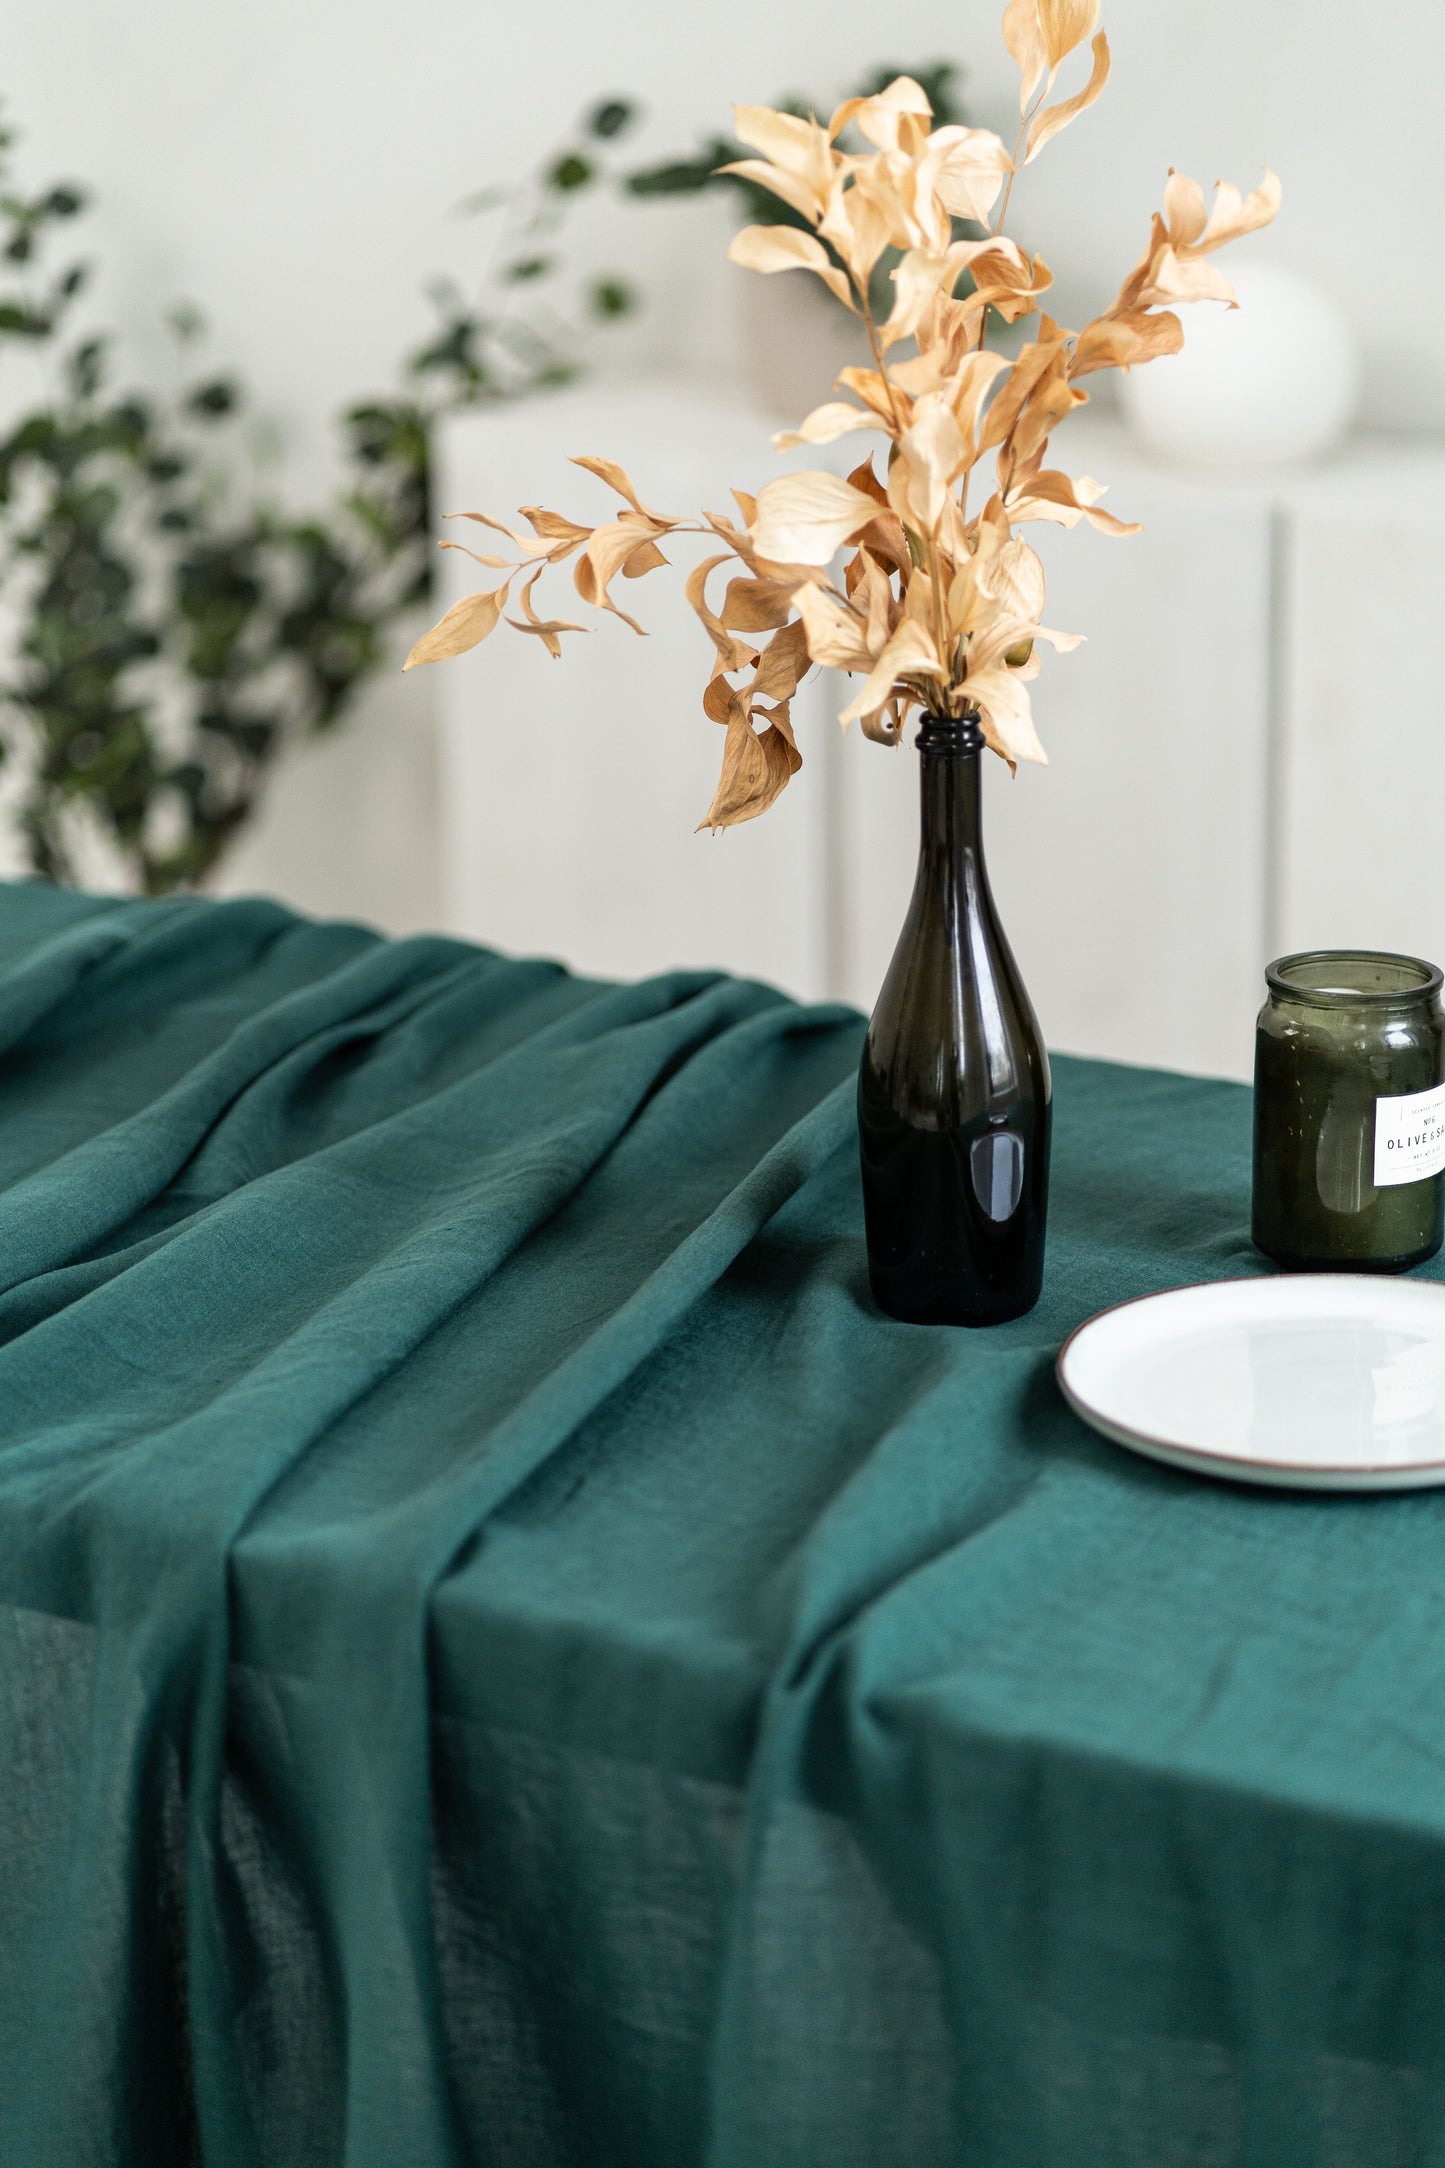 Emerald Green Linen tablecloth in rectangular shape